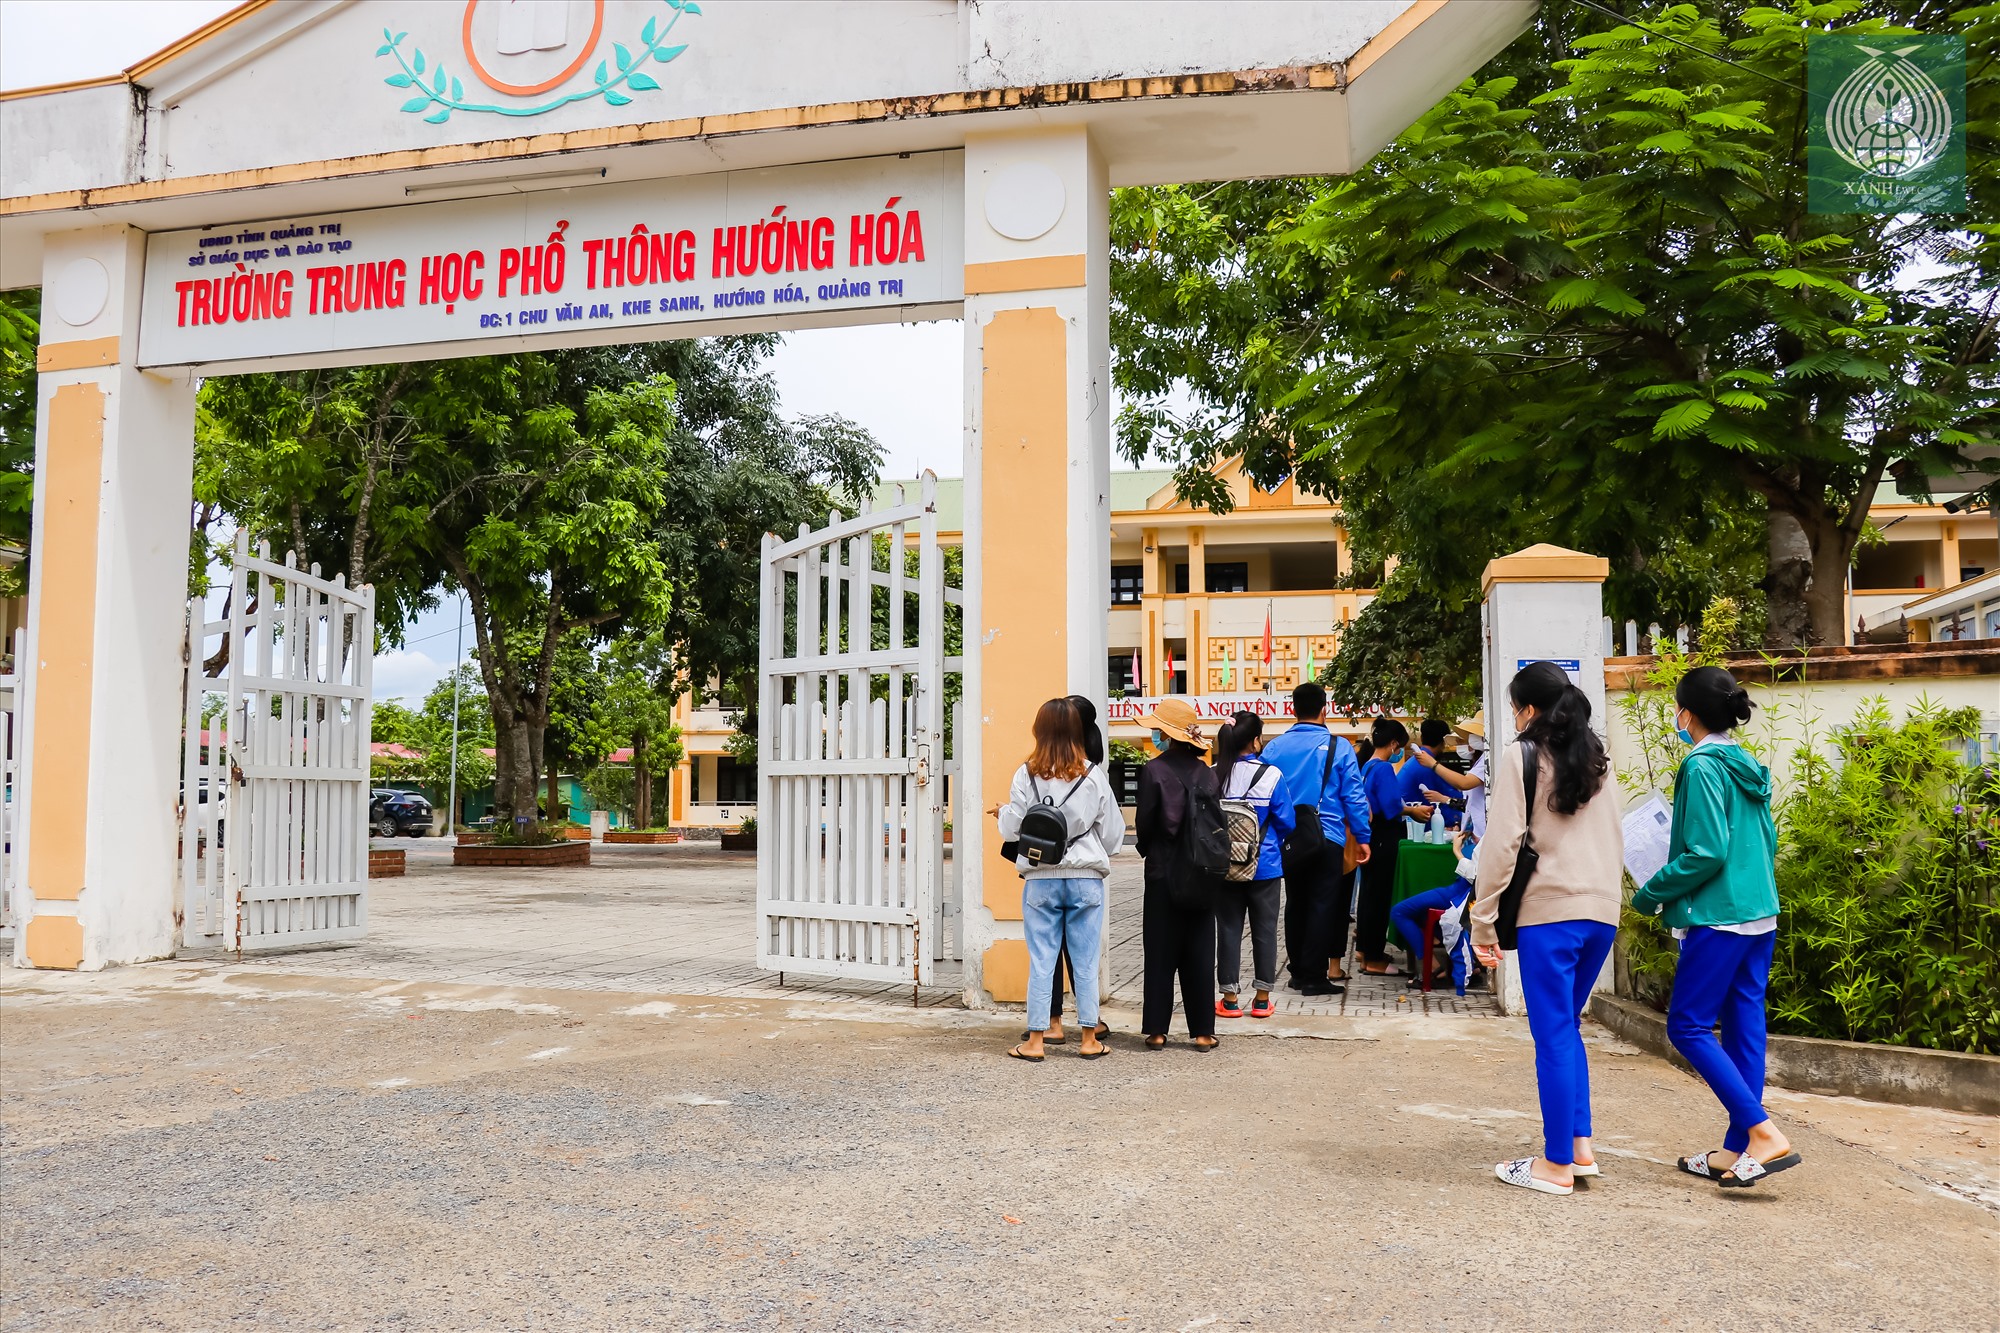 Điểm thi Trường THPT Hướng Hóa tại tại trấn Khe Sanh là điểm có số lượng thí sinh dự thi lớn nhất toàn Huyện.